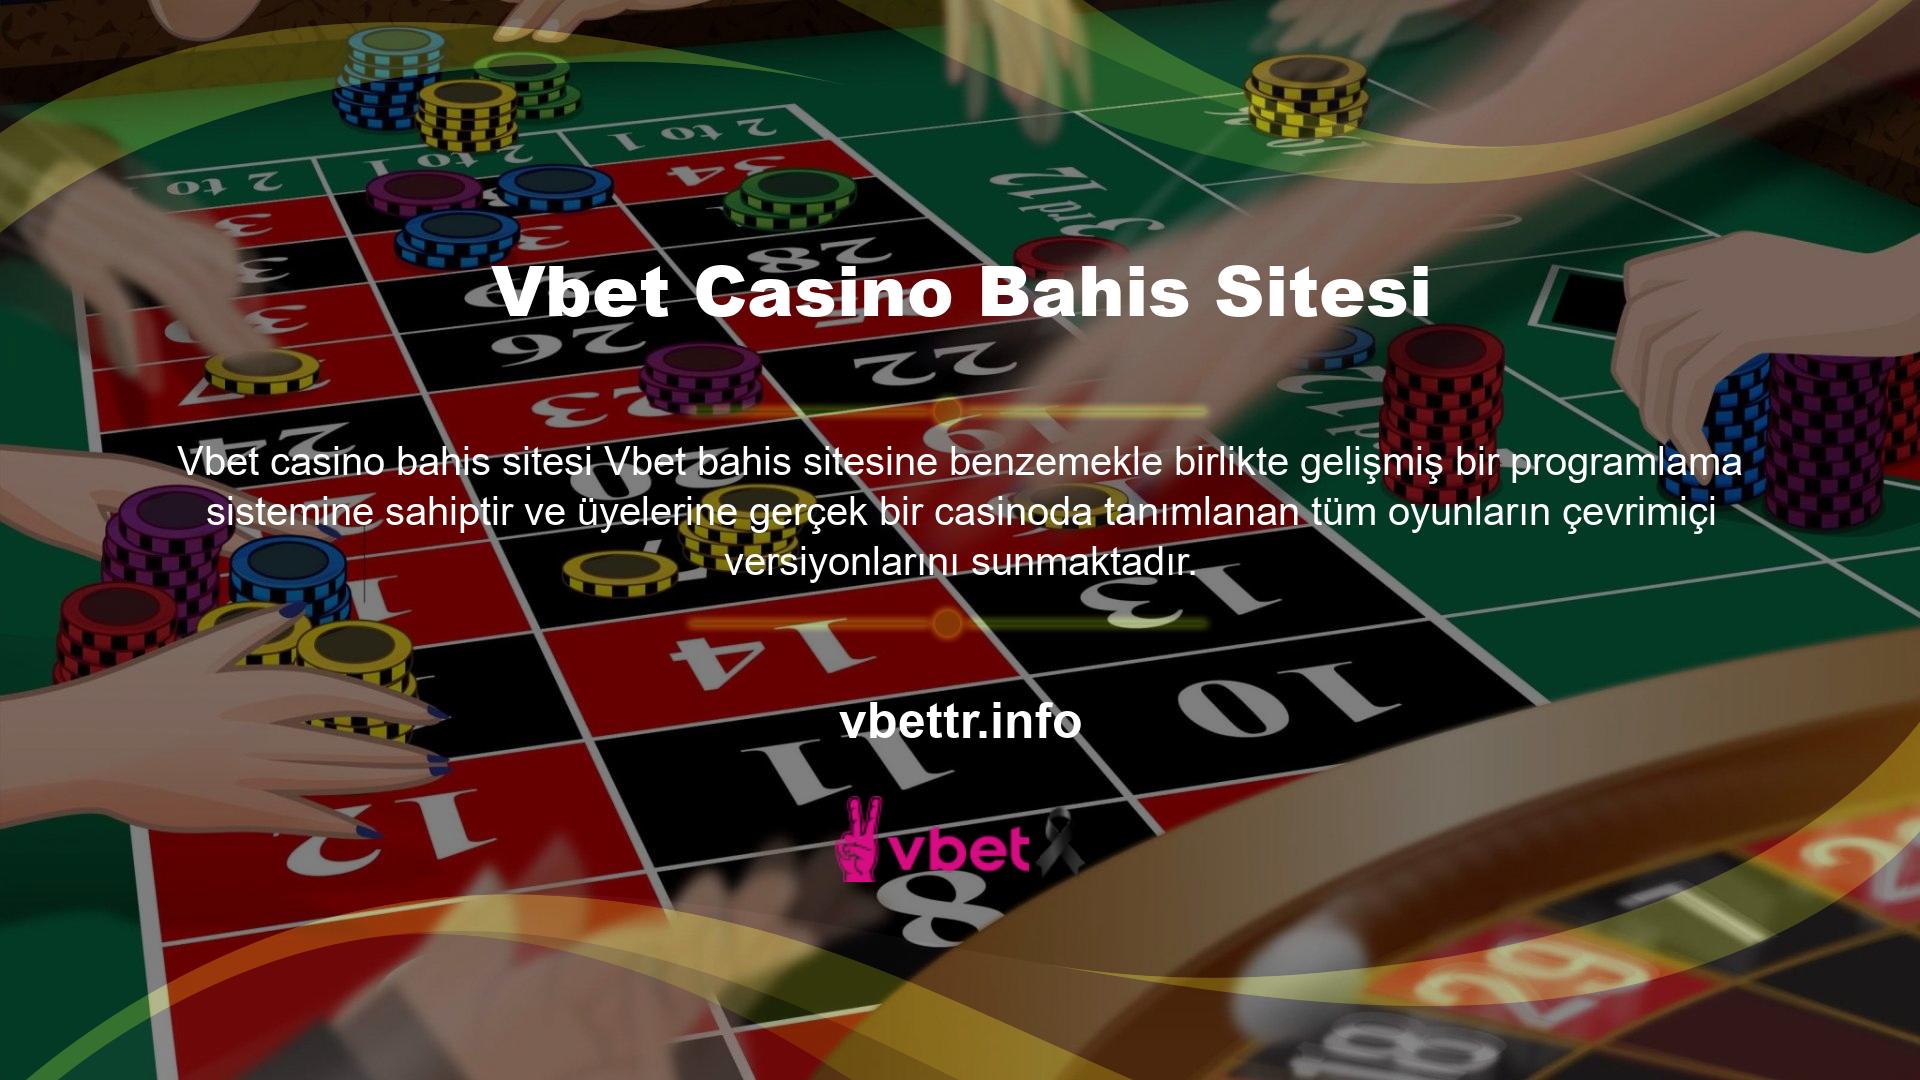 Online casino alanında geliştirilen en gelişmiş sistem aynı zamanda Vbet casino bahis sitesinde üyelerin gerçek kullanıcılarla canlı casino oyunları oynamasına da olanak sağlamaktadır